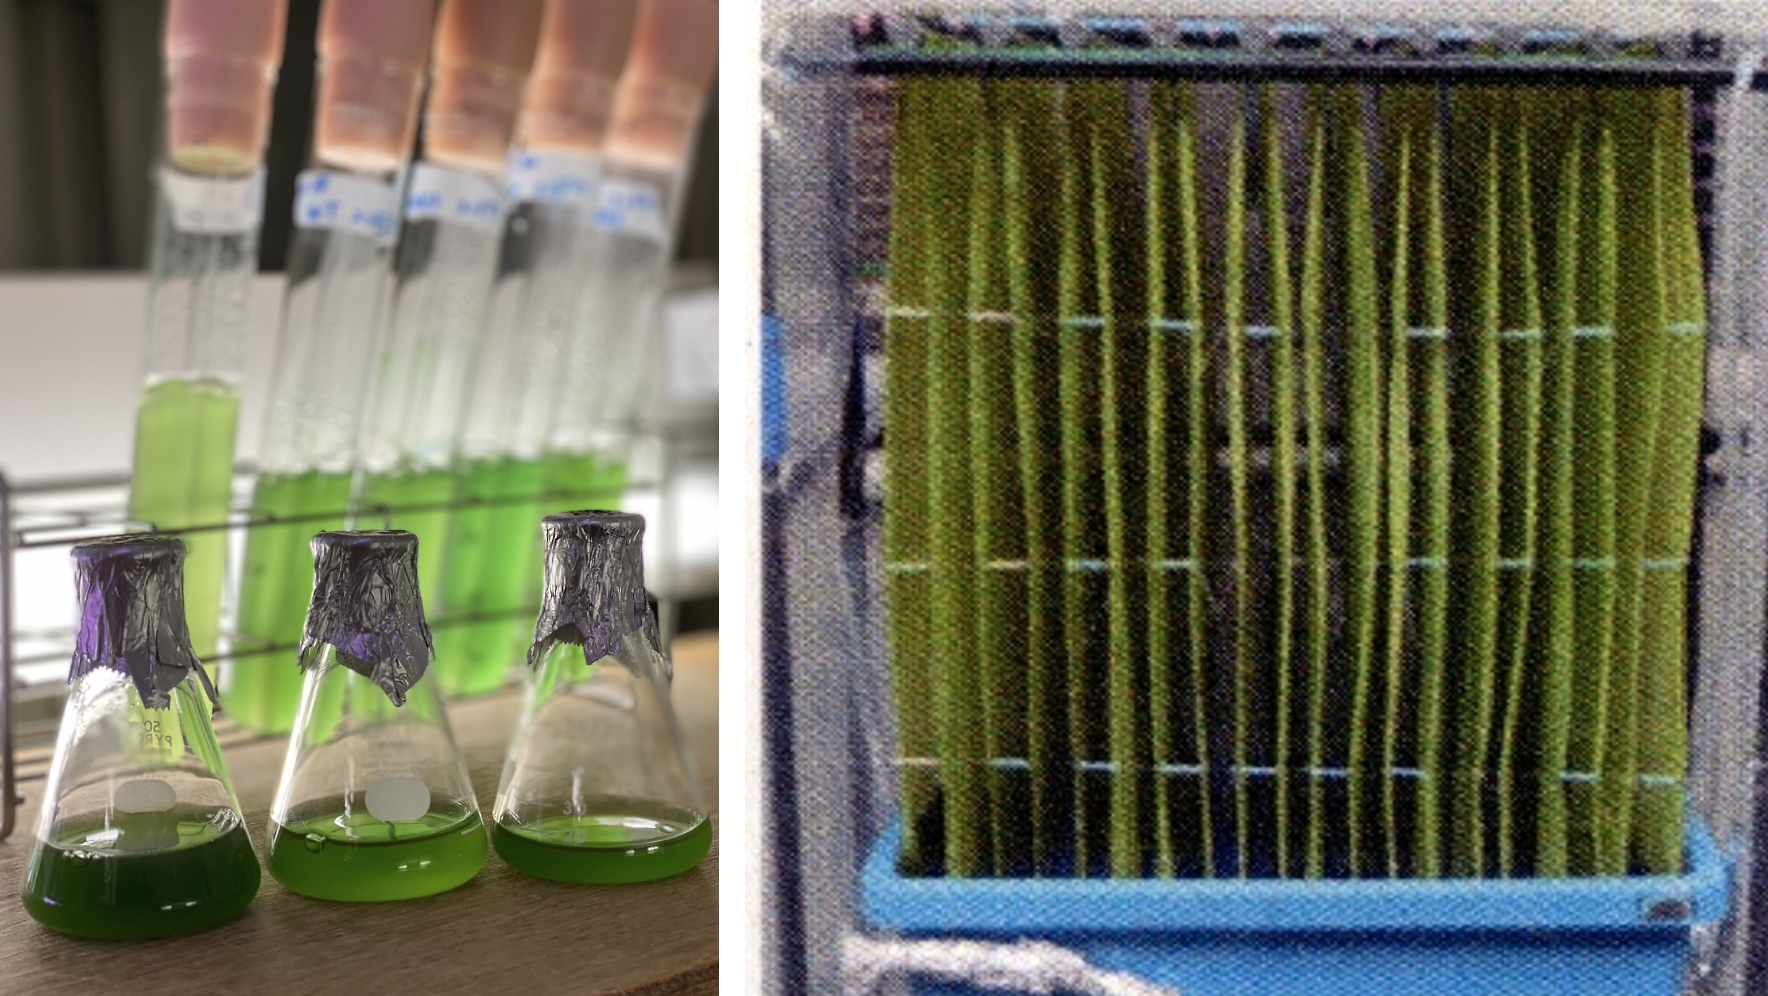 環境応用植物学研究室の「クロレラの固相表面培養環境への応答」に関する論文がFrontiers in Plant Science誌に掲載されました